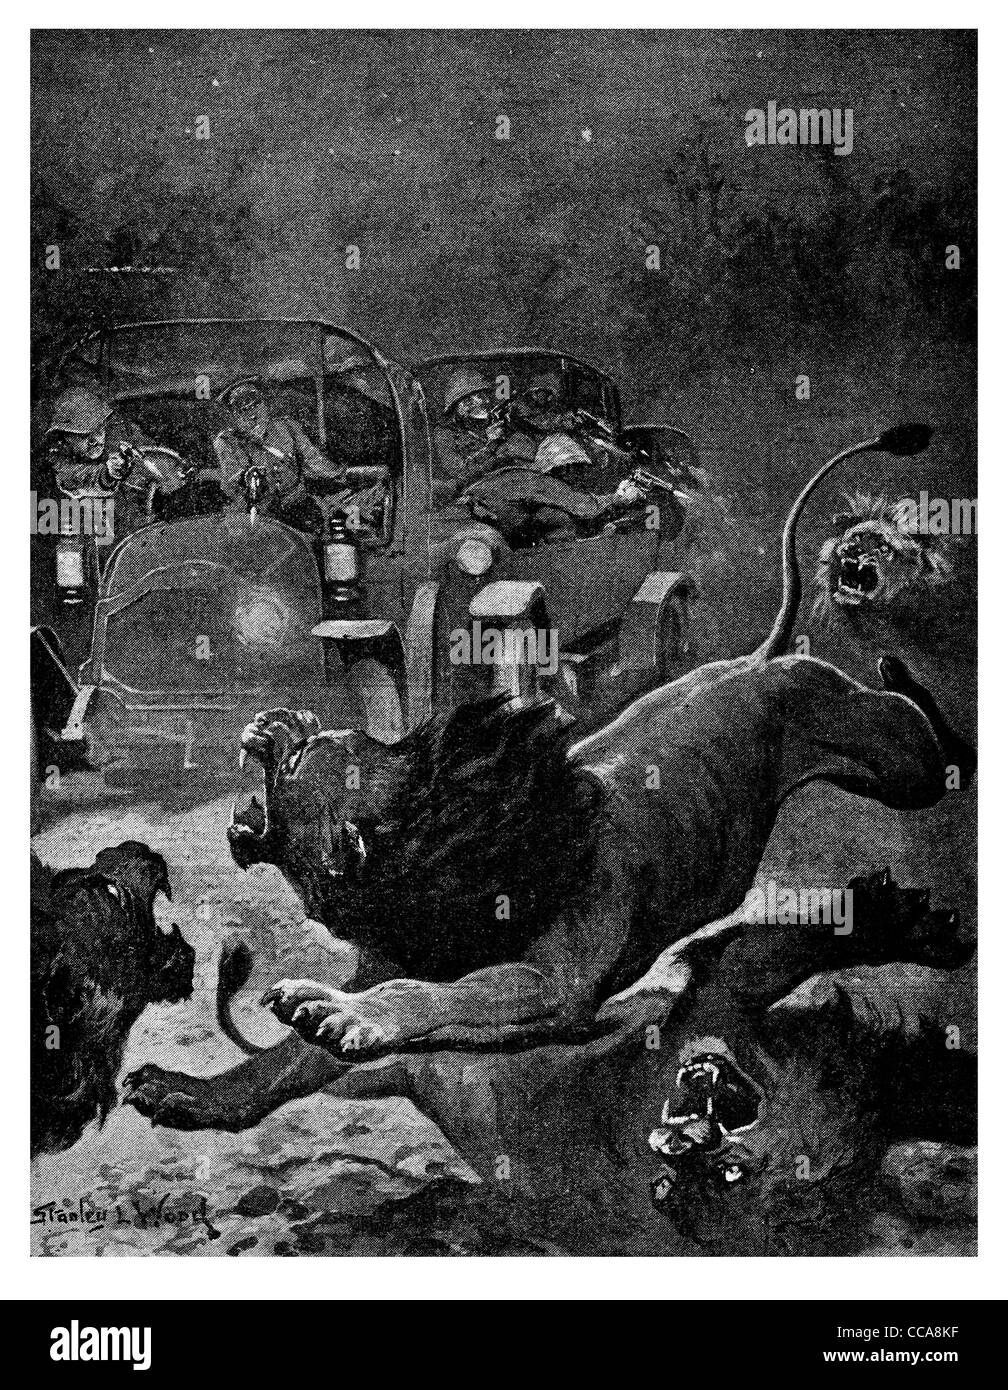 1916 East Africa attaccando wild Lion Kilimanjaro Africa scontro del veicolo la caccia la caccia preda predator hunter beast king artiglio nella giungla Foto Stock